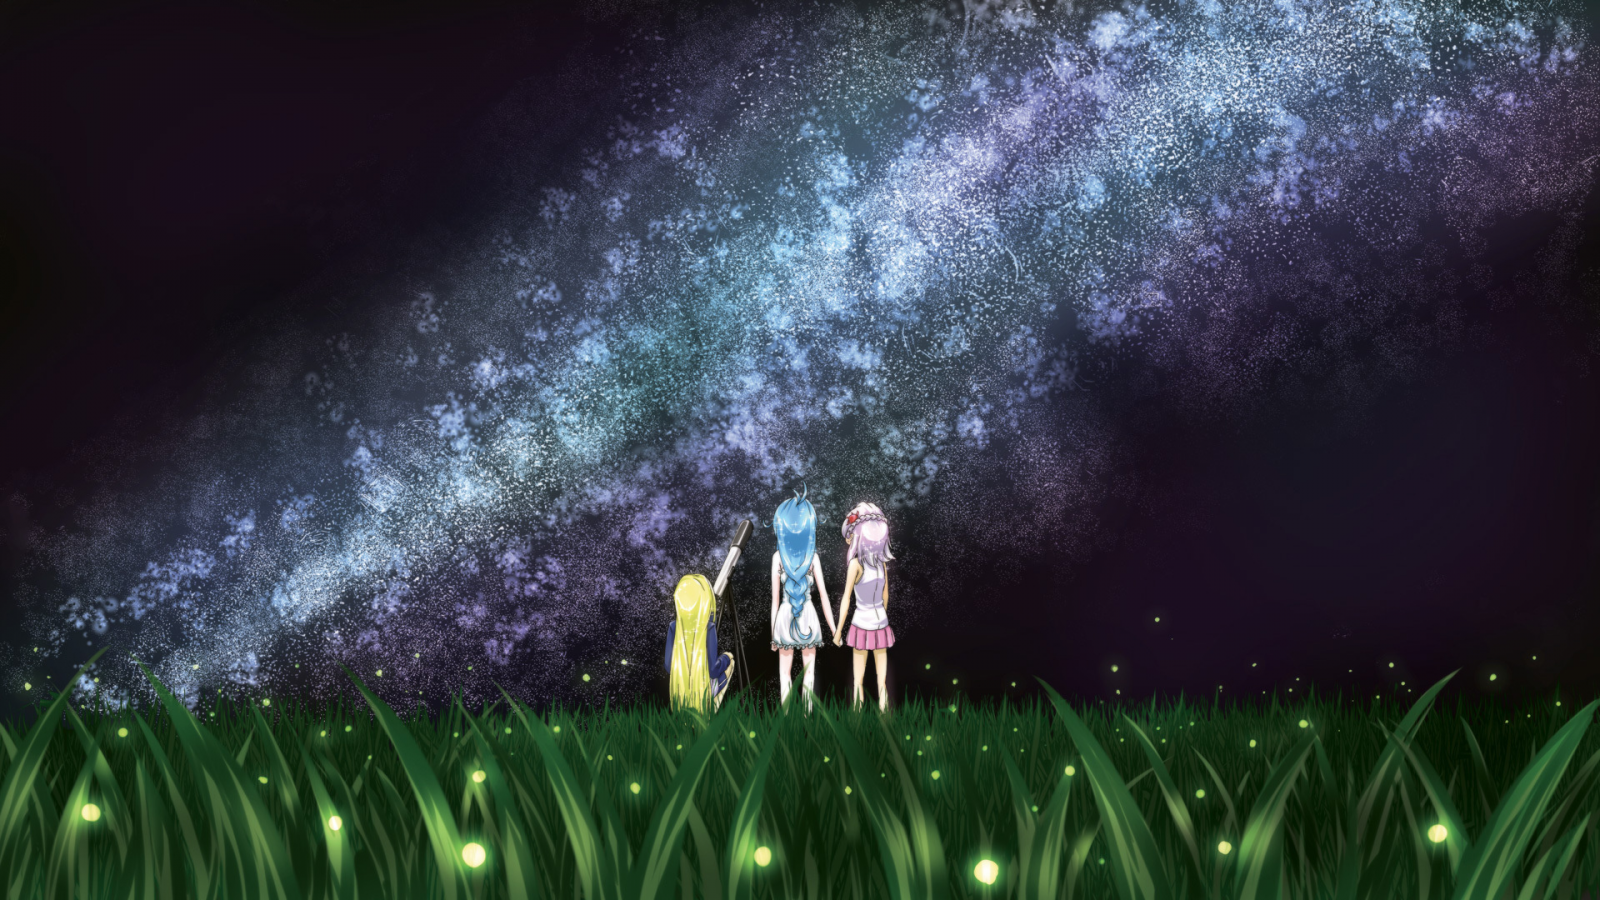 светлячки, телескоп, трава, звёзды, млечный путь, луг, девочки